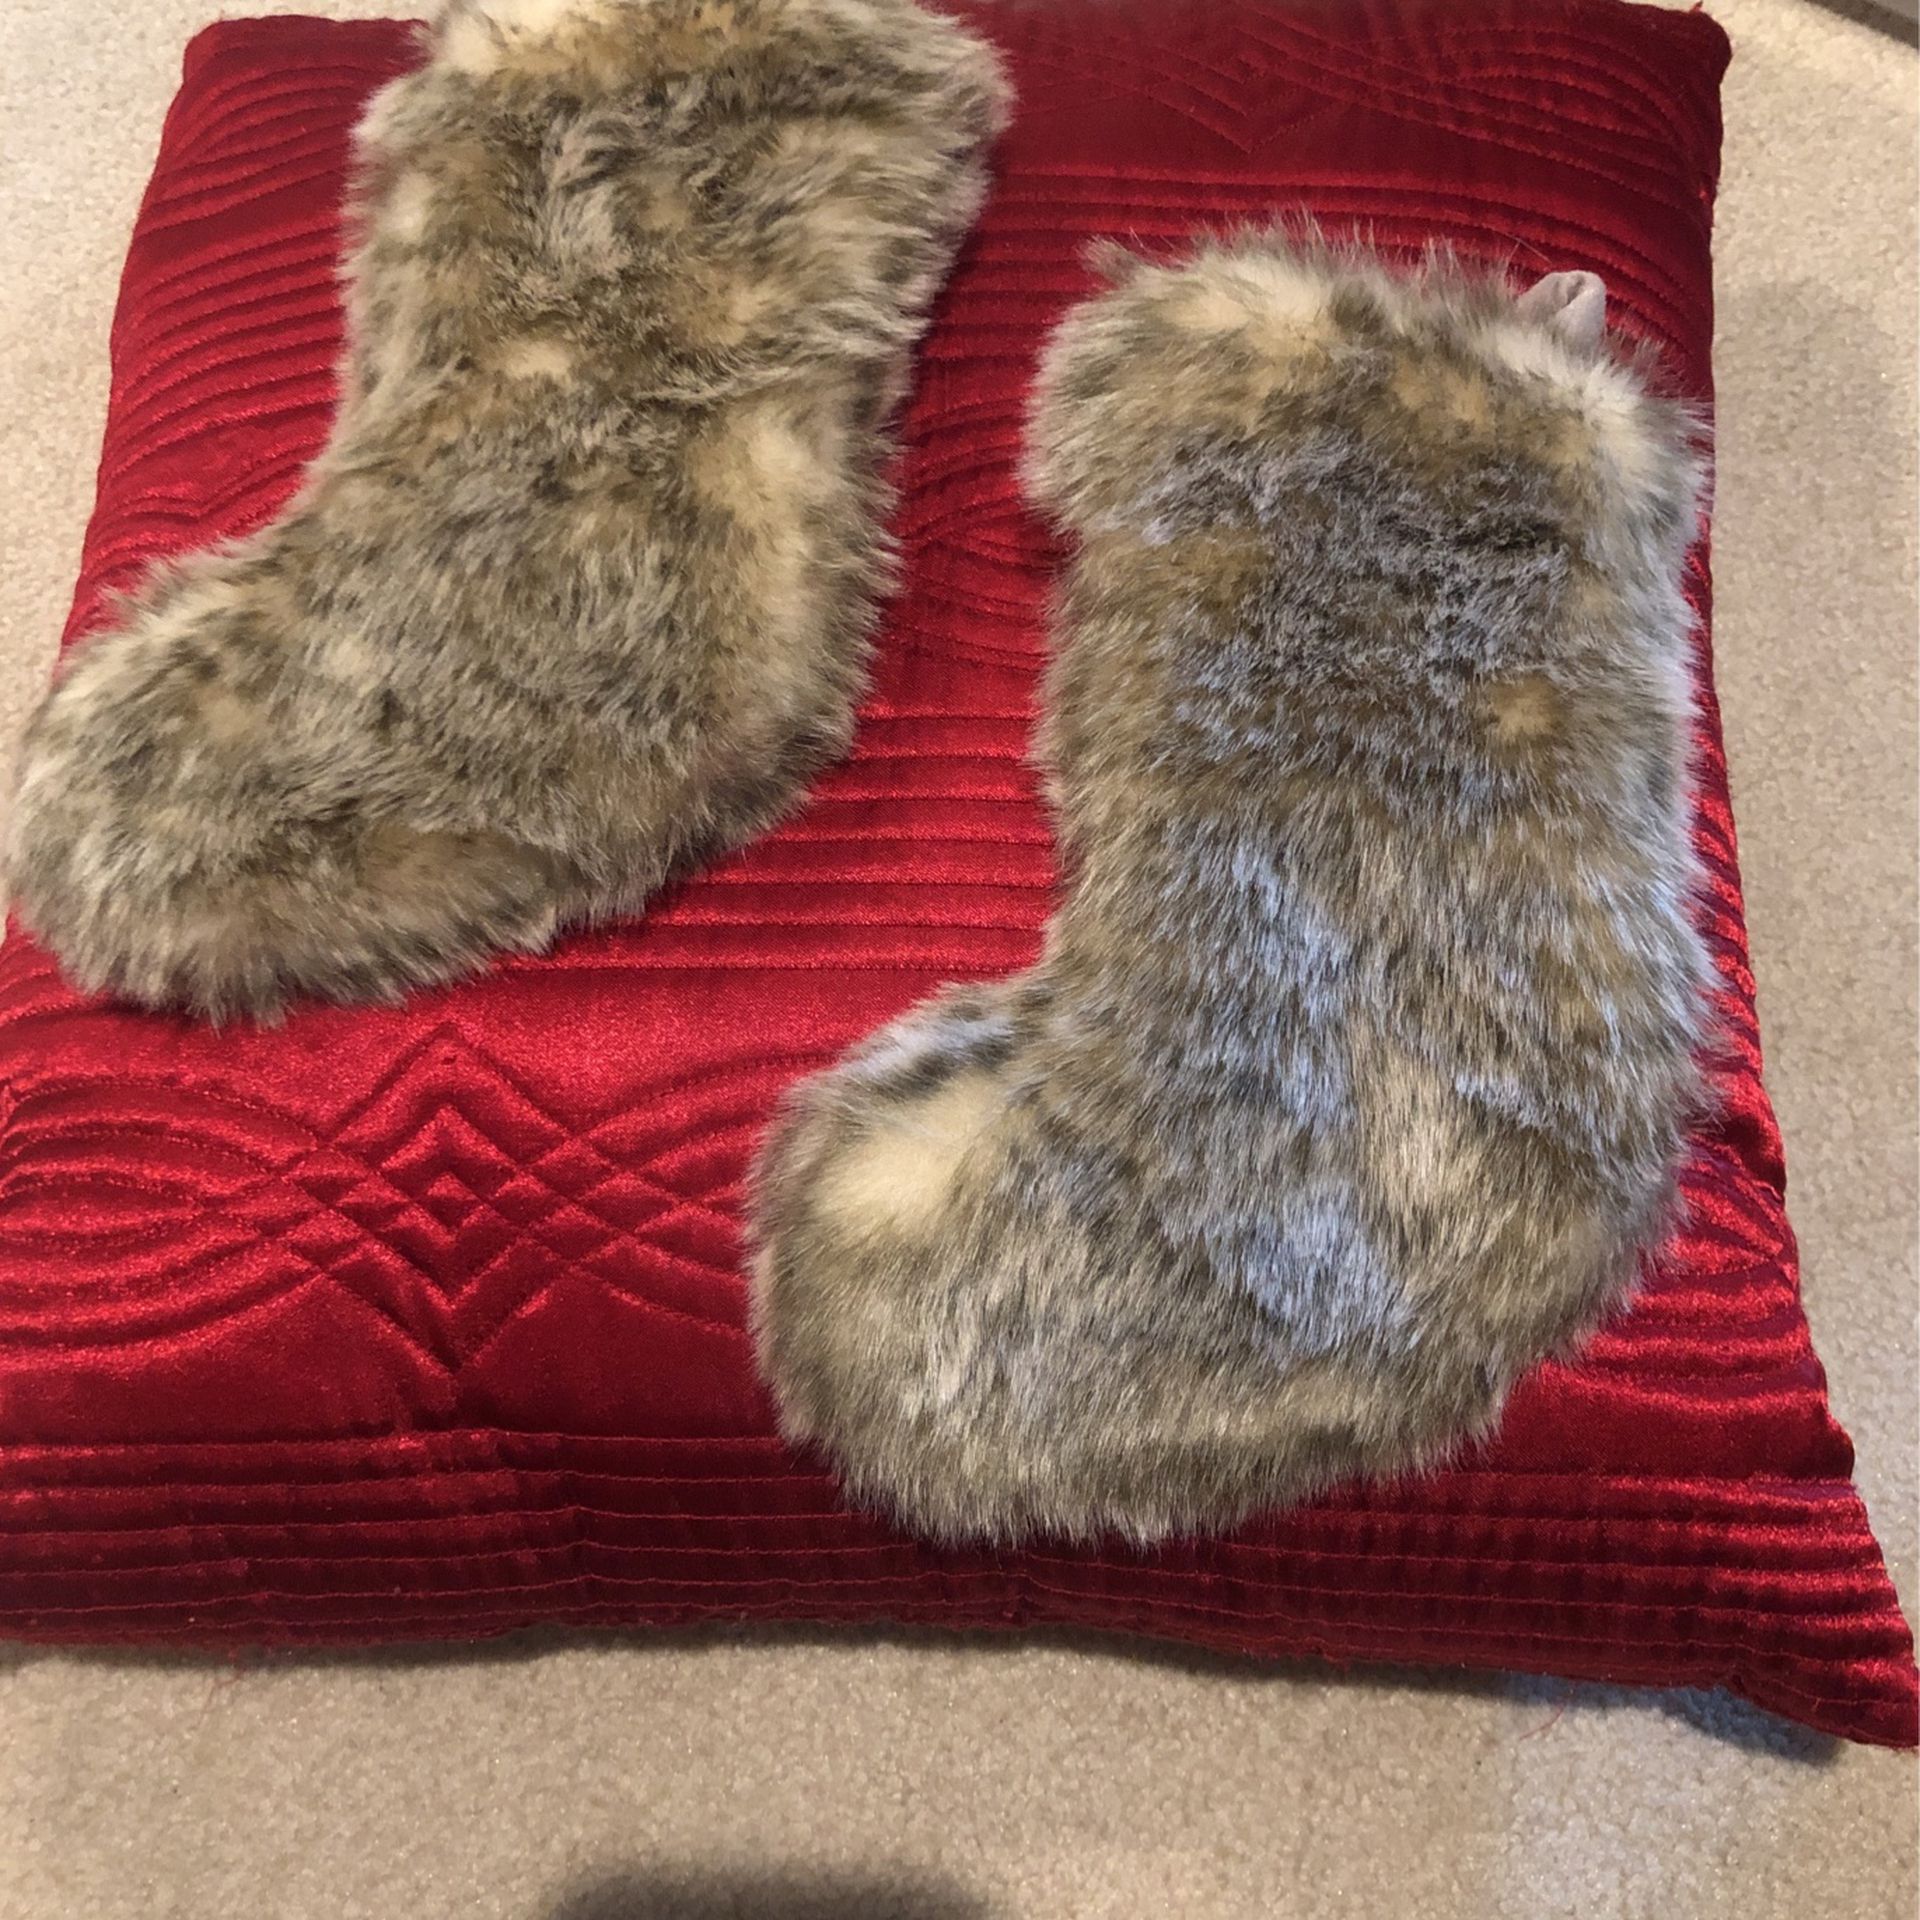 Two 11” Fur Stockings